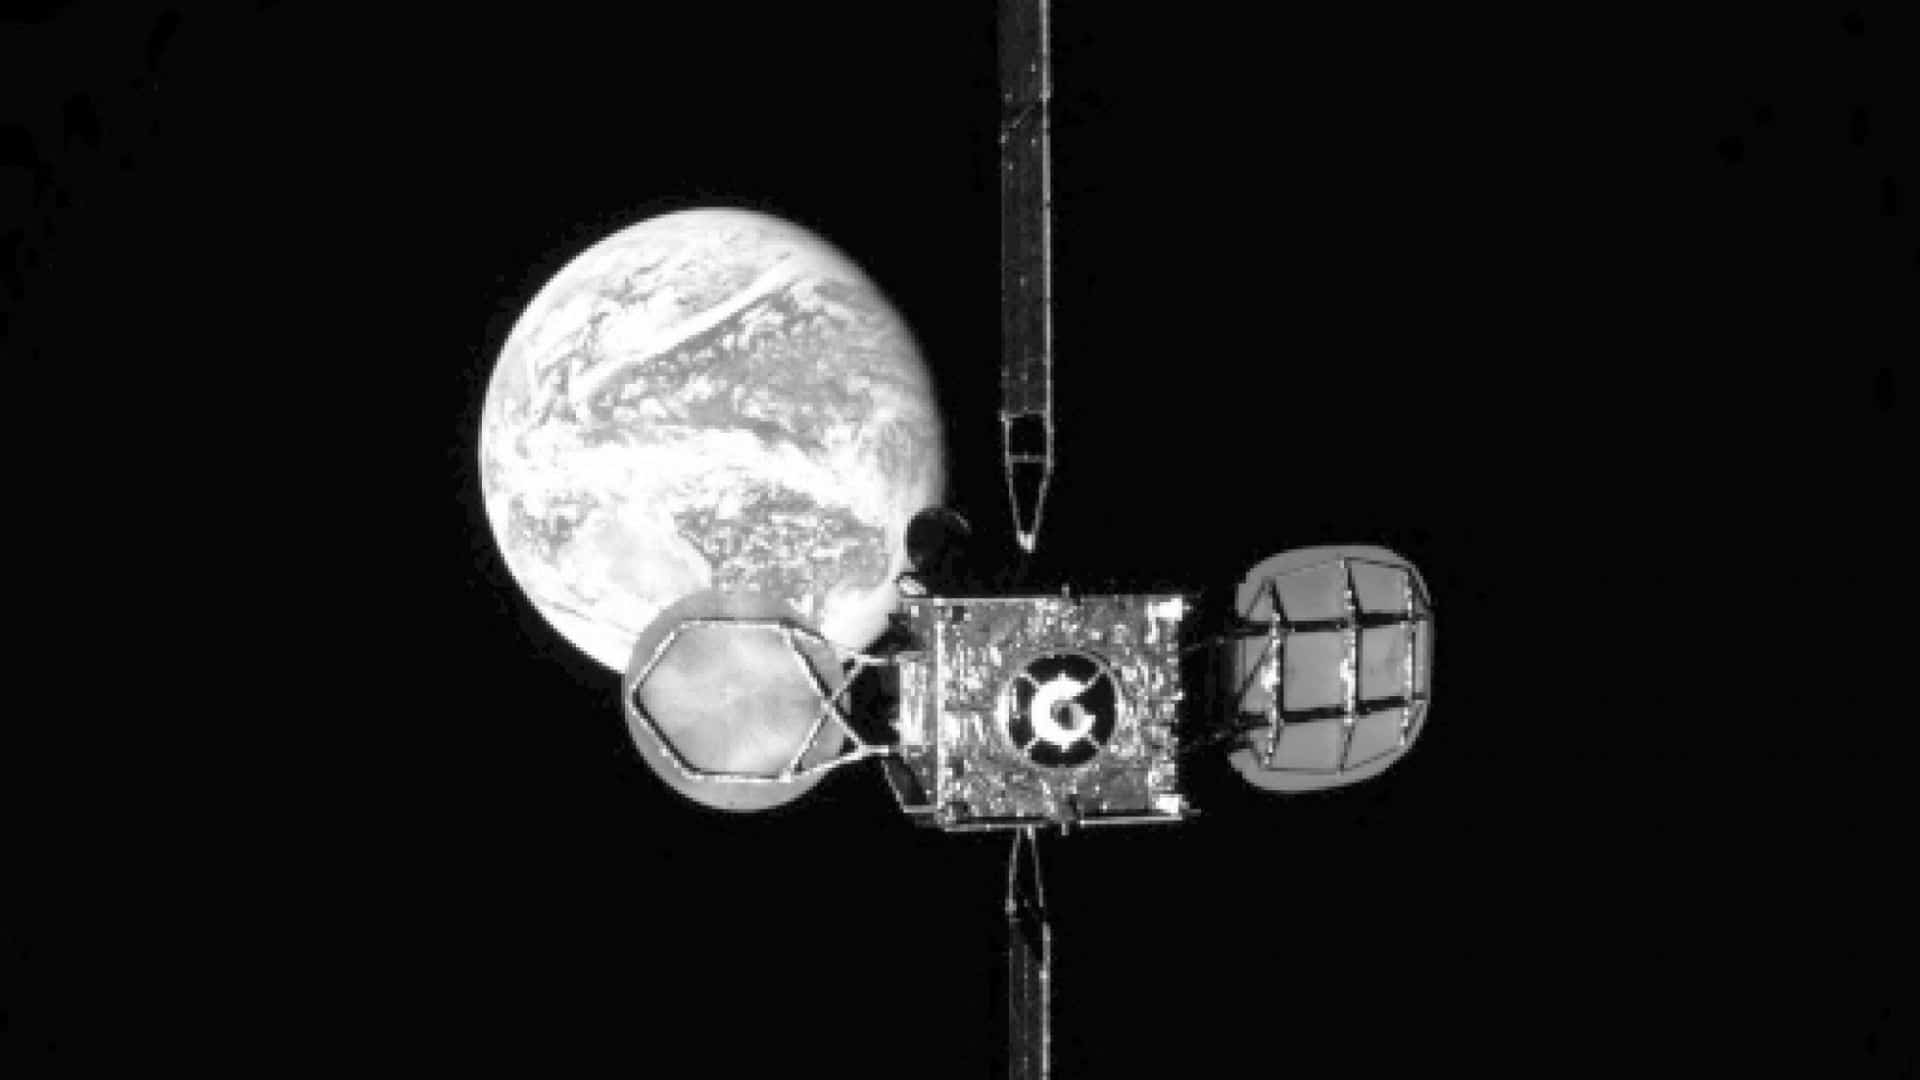 El 25 de febrero, el Mission Extension Vehicle-1 de Northrop Grumman se acopló al satélite Intelsat-901 en órbita geoestacionaria. Las imágenes fueron espectaculares y el satélite obtendrá 5 años extras de vida útil. [Northrop Grumman]